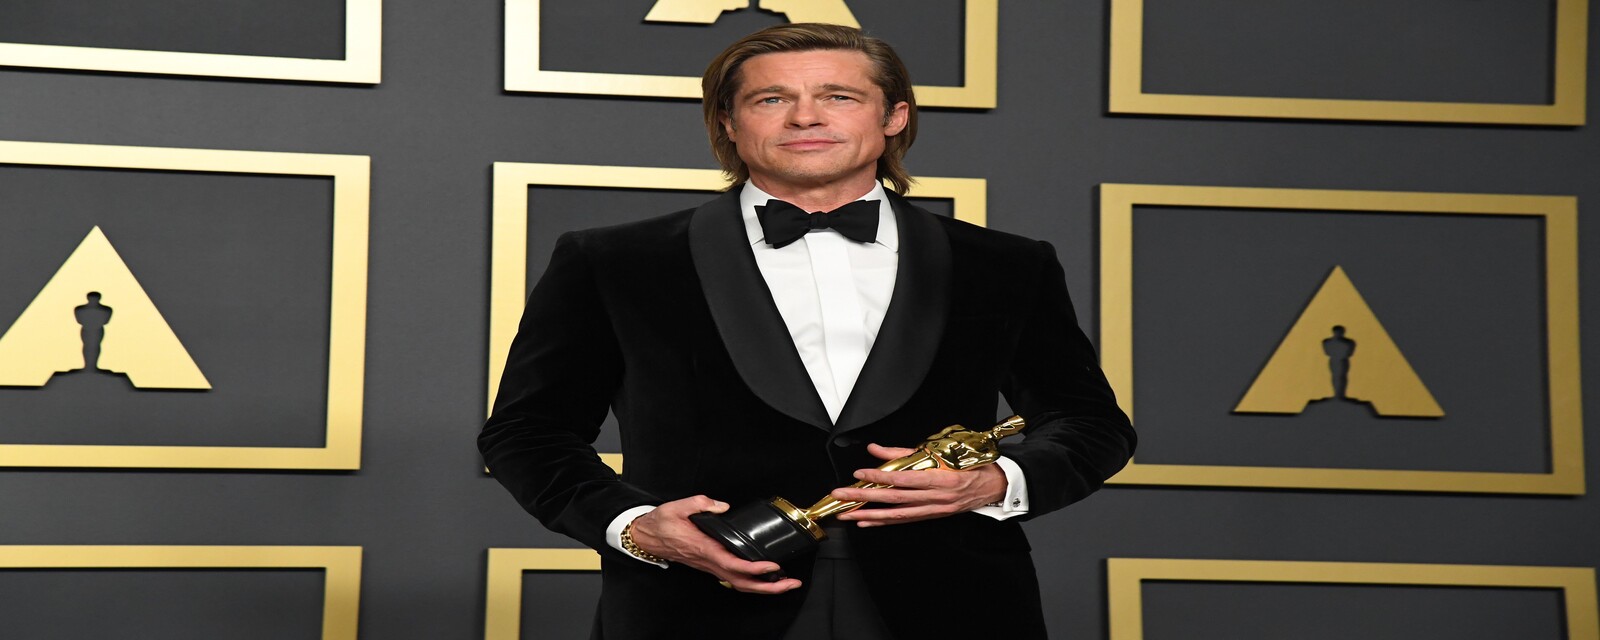 Watch Brad Pitt's Oscars 2020 Speech for Best Supporting Actor Oscars